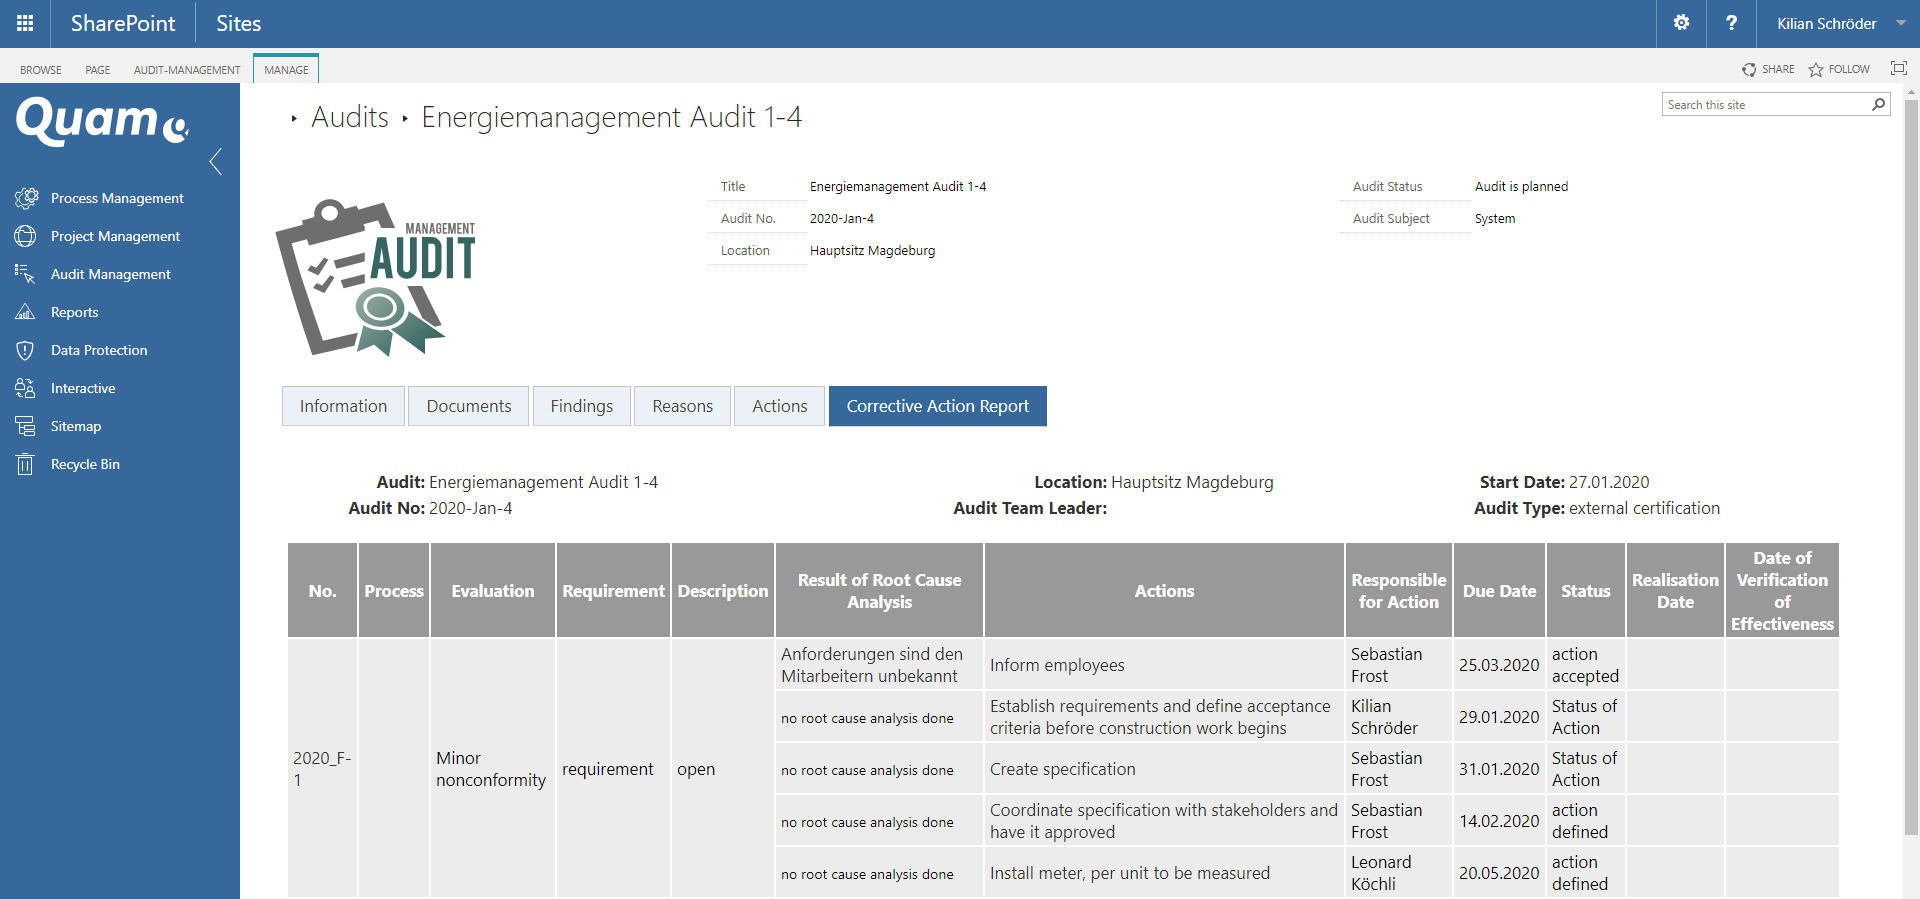 Auditberichte & Audit-Nachbereitung